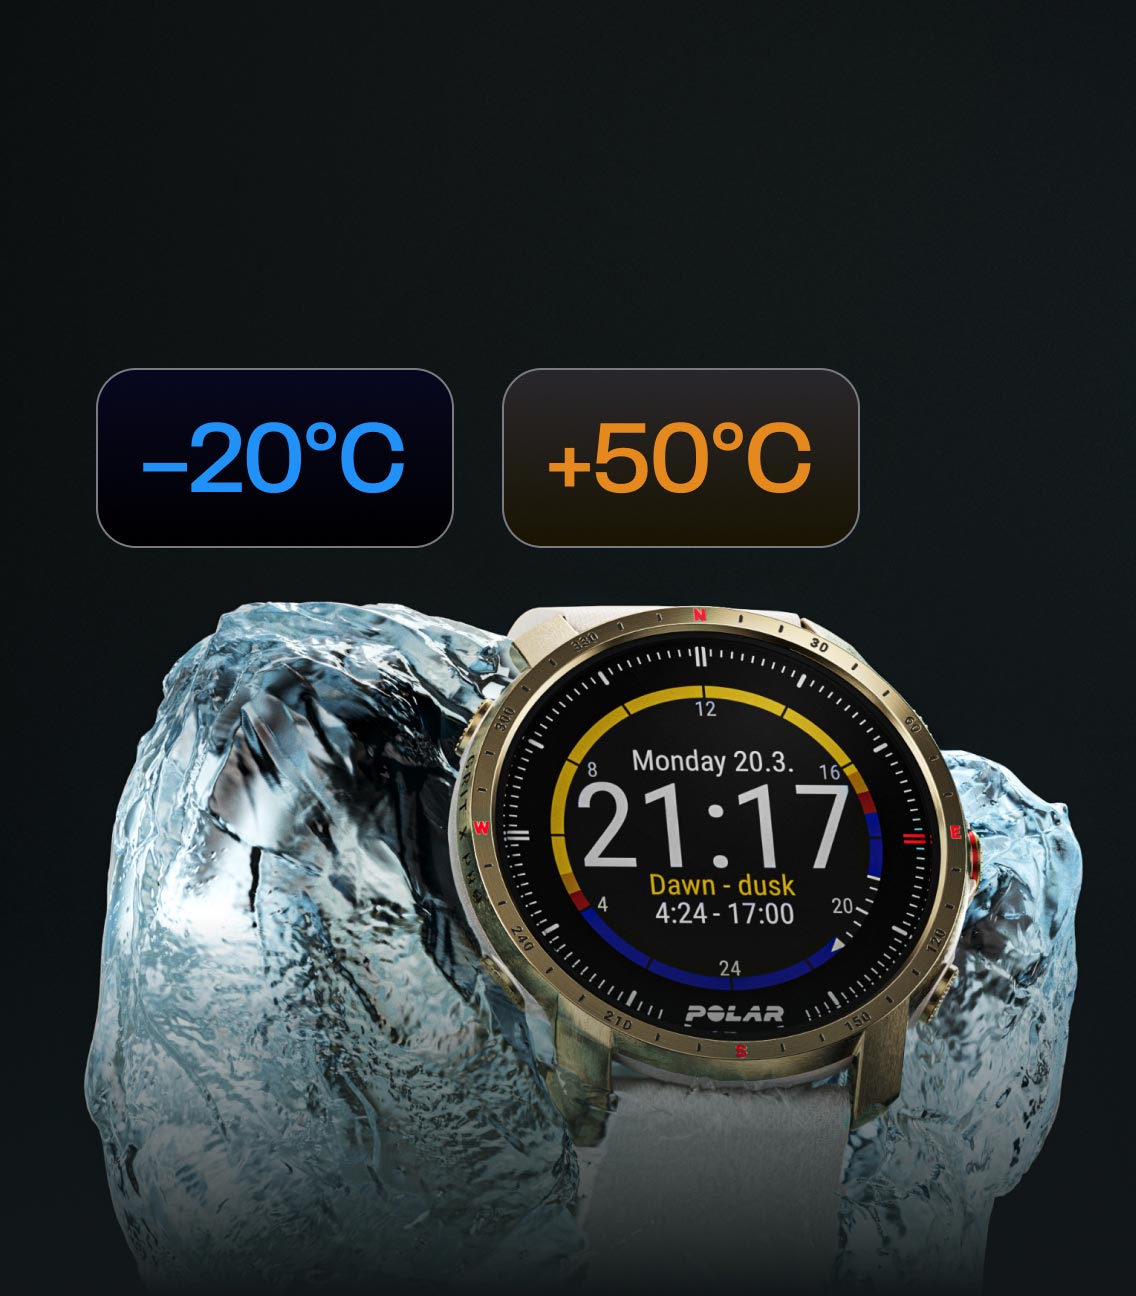 Polar Grit X Pro, El mejor reloj deportivo para exteriores